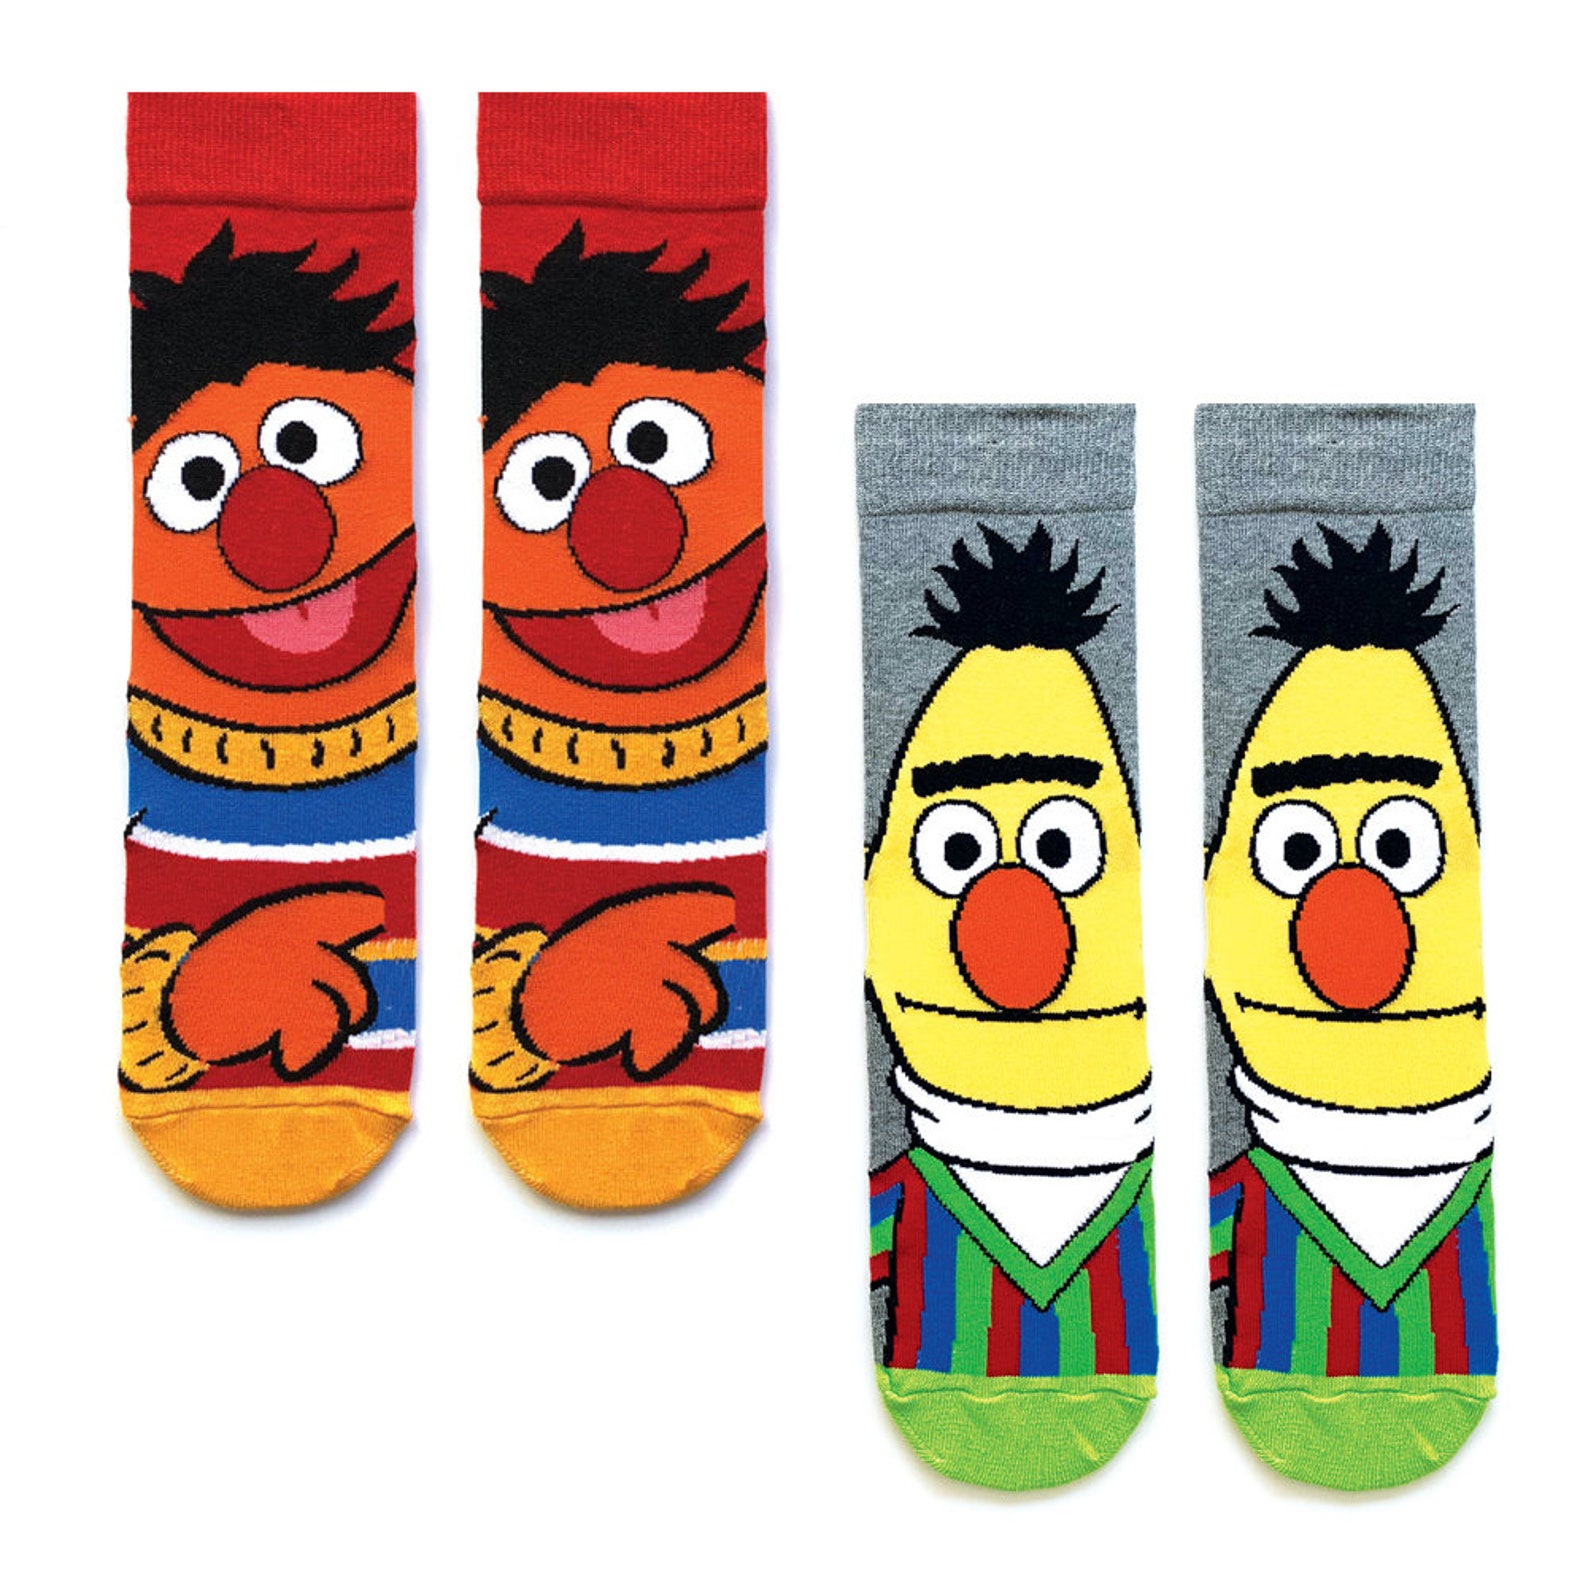 Sesame Street Socks Ernie Socks Bert Socks Sesame Street | Etsy